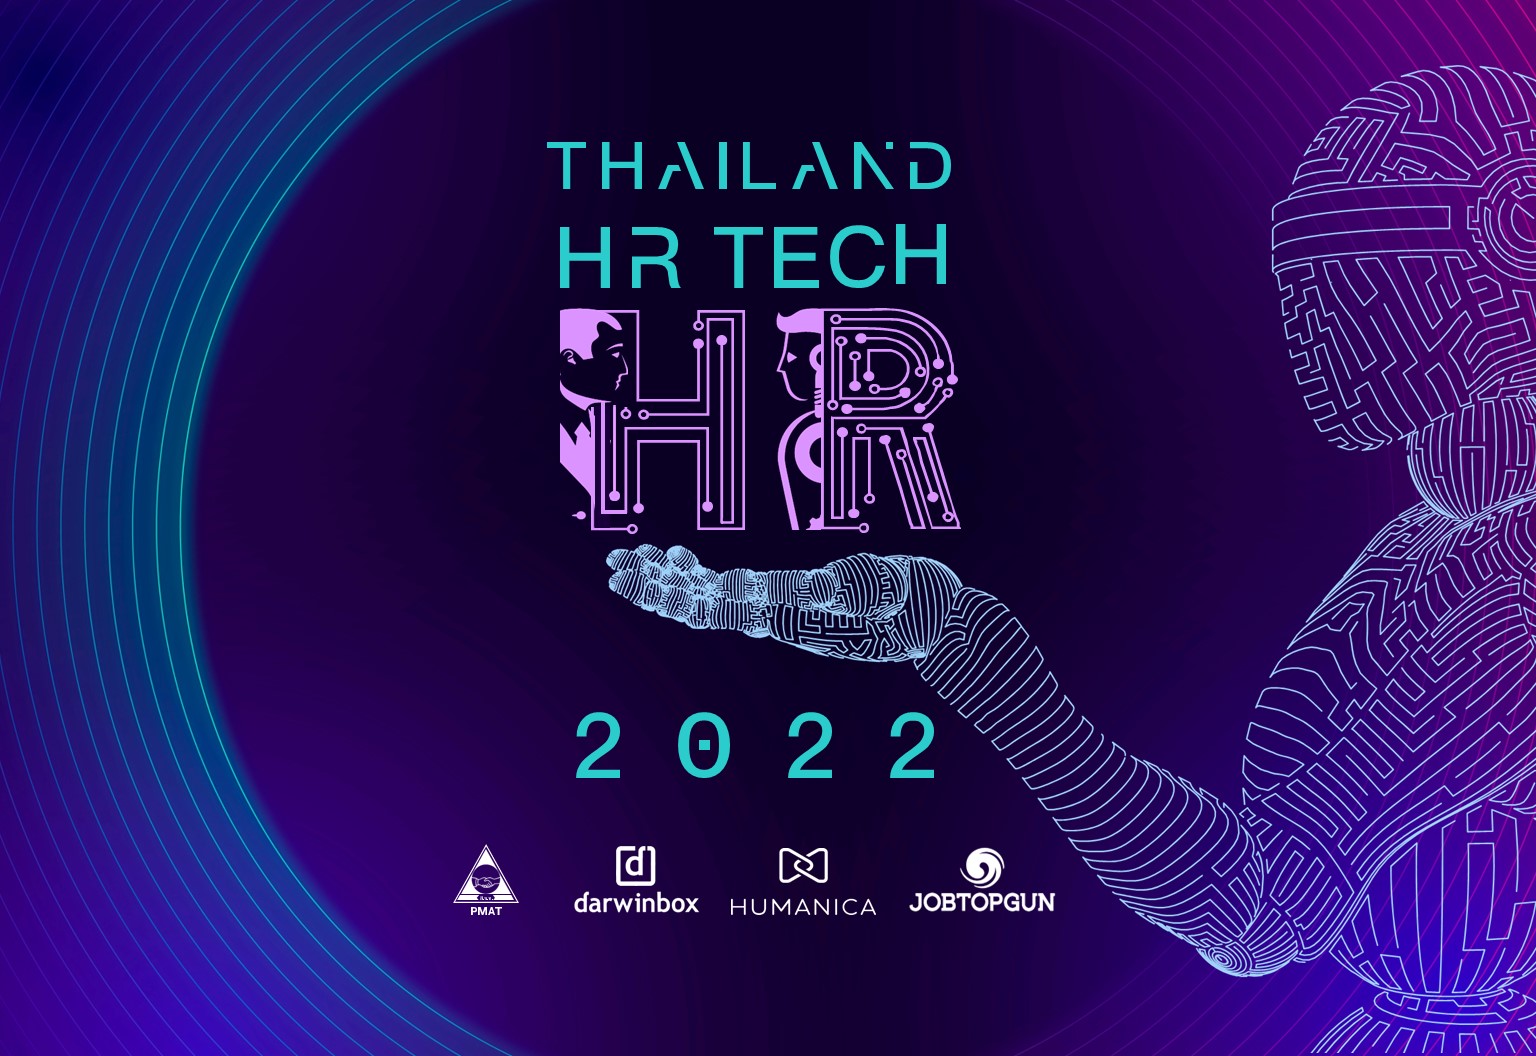 สิ่งที่คุณต้องรู้จากงานแถลงข่าว THAILAND HR TECH 2022 : Let’s create human-first technology for humanity